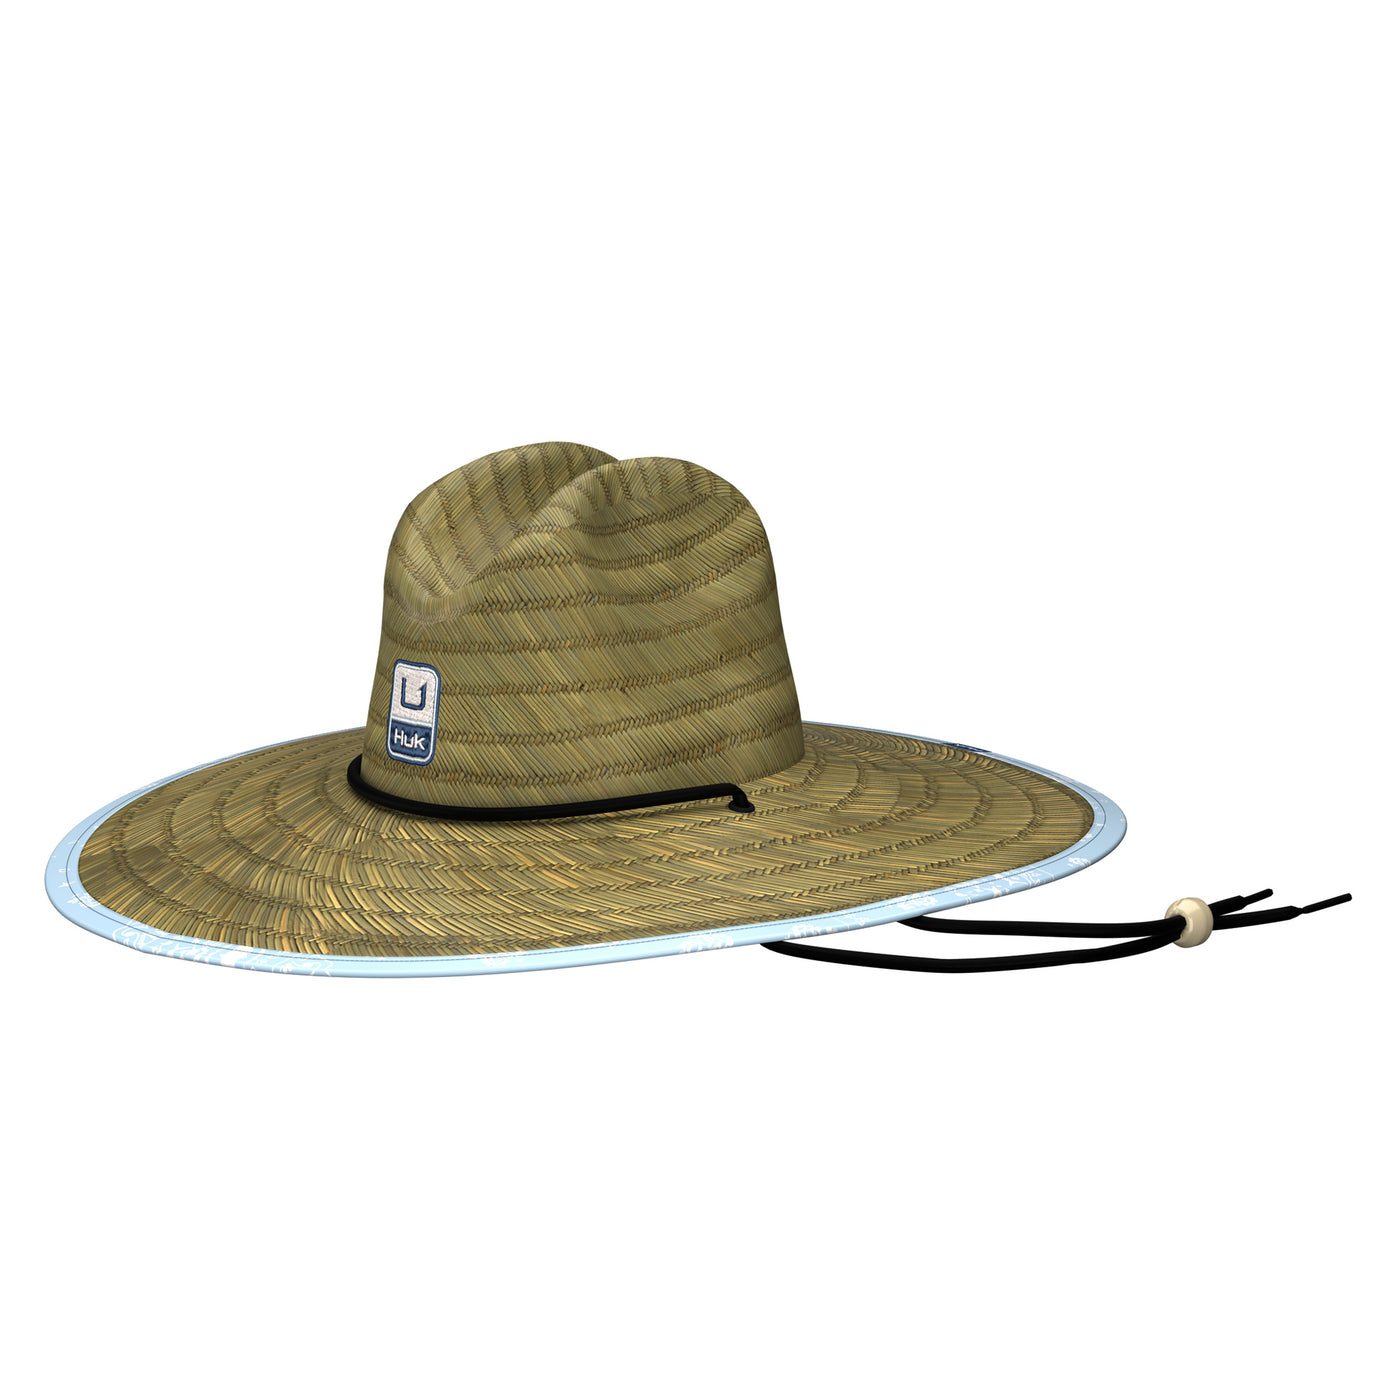 Huk Hukdana Straw Hat